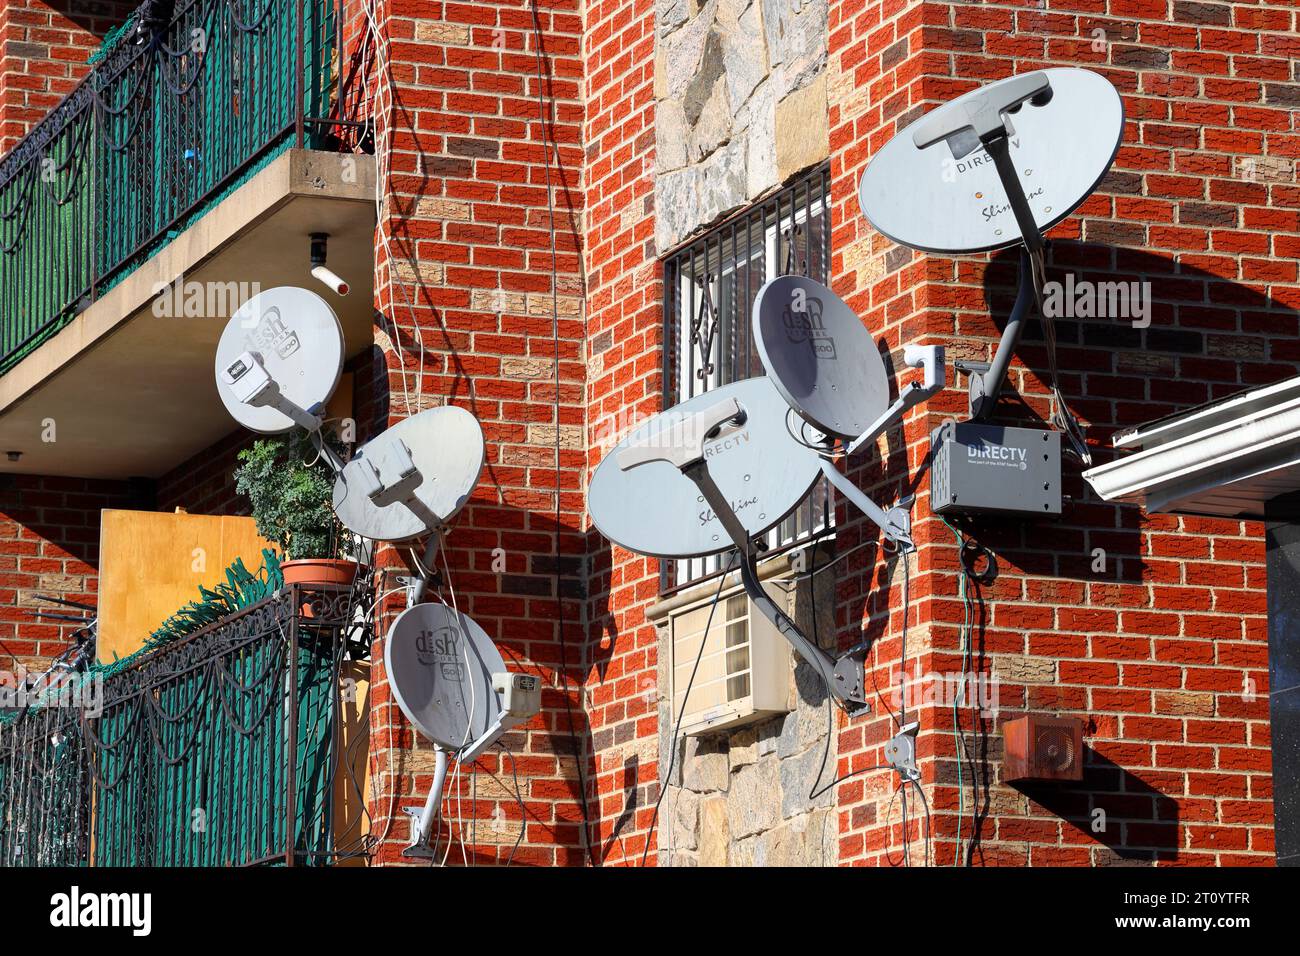 Plusieurs antennes paraboliques de télévision sur le côté d'un immeuble d'appartements à New York. Réseau parabolique, antennes de diffusion numérique par satellite DirecTV. Banque D'Images